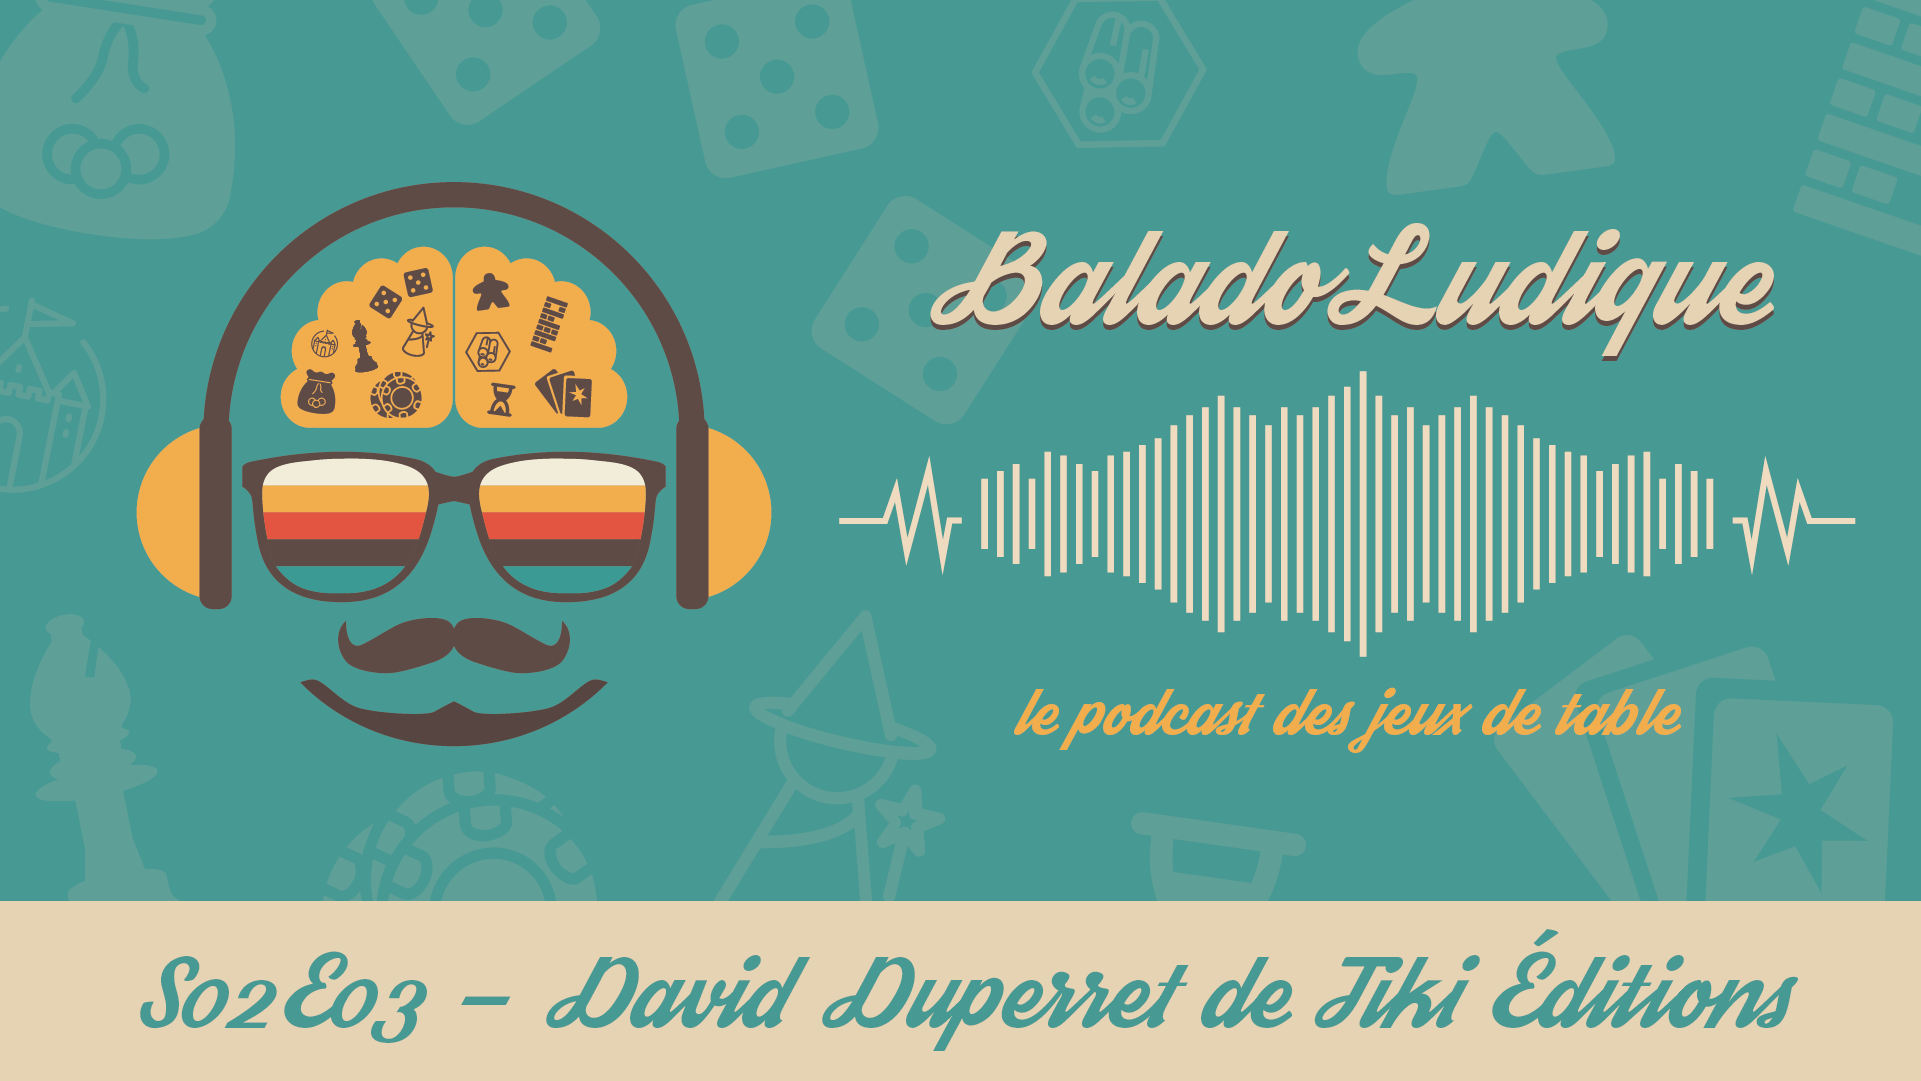 David Duperret de Tiki Éditions - BaladoLudique - s02e03